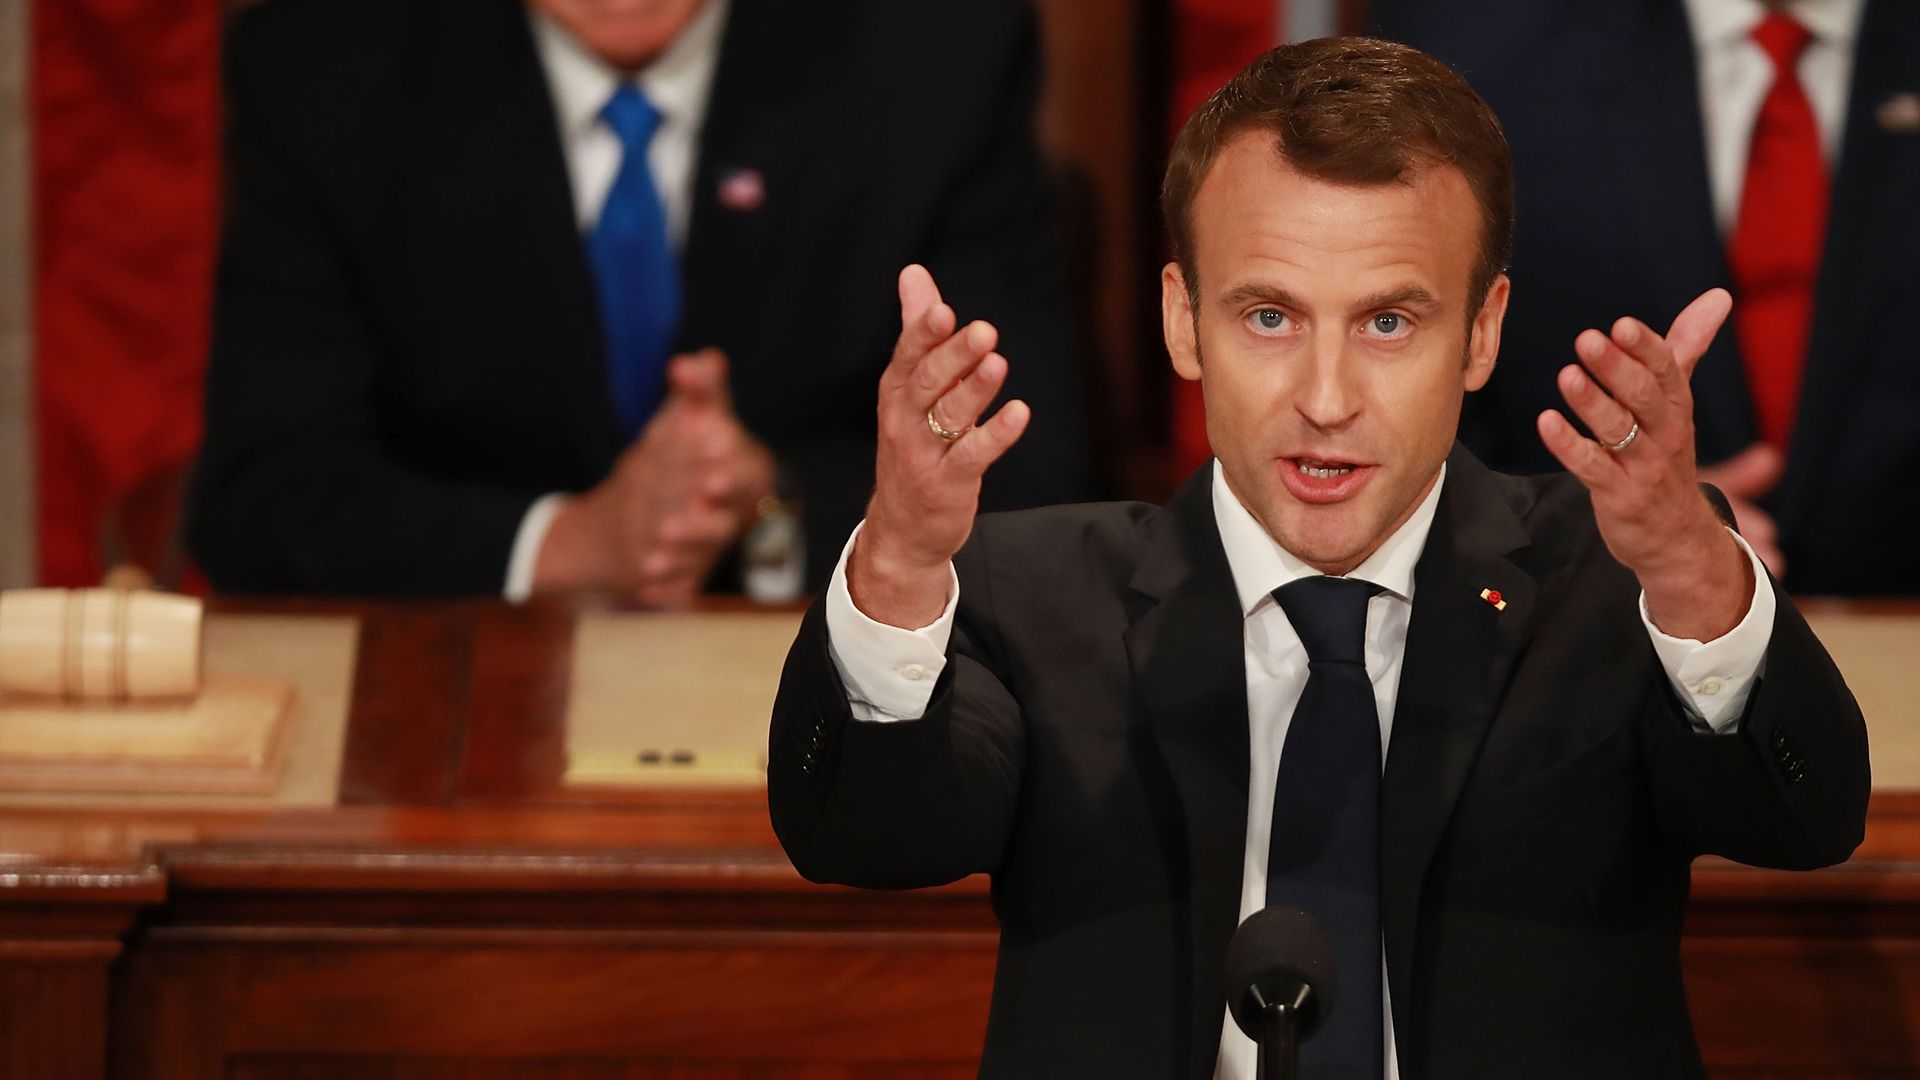 Emmanuel Macron holds both palms upwards.